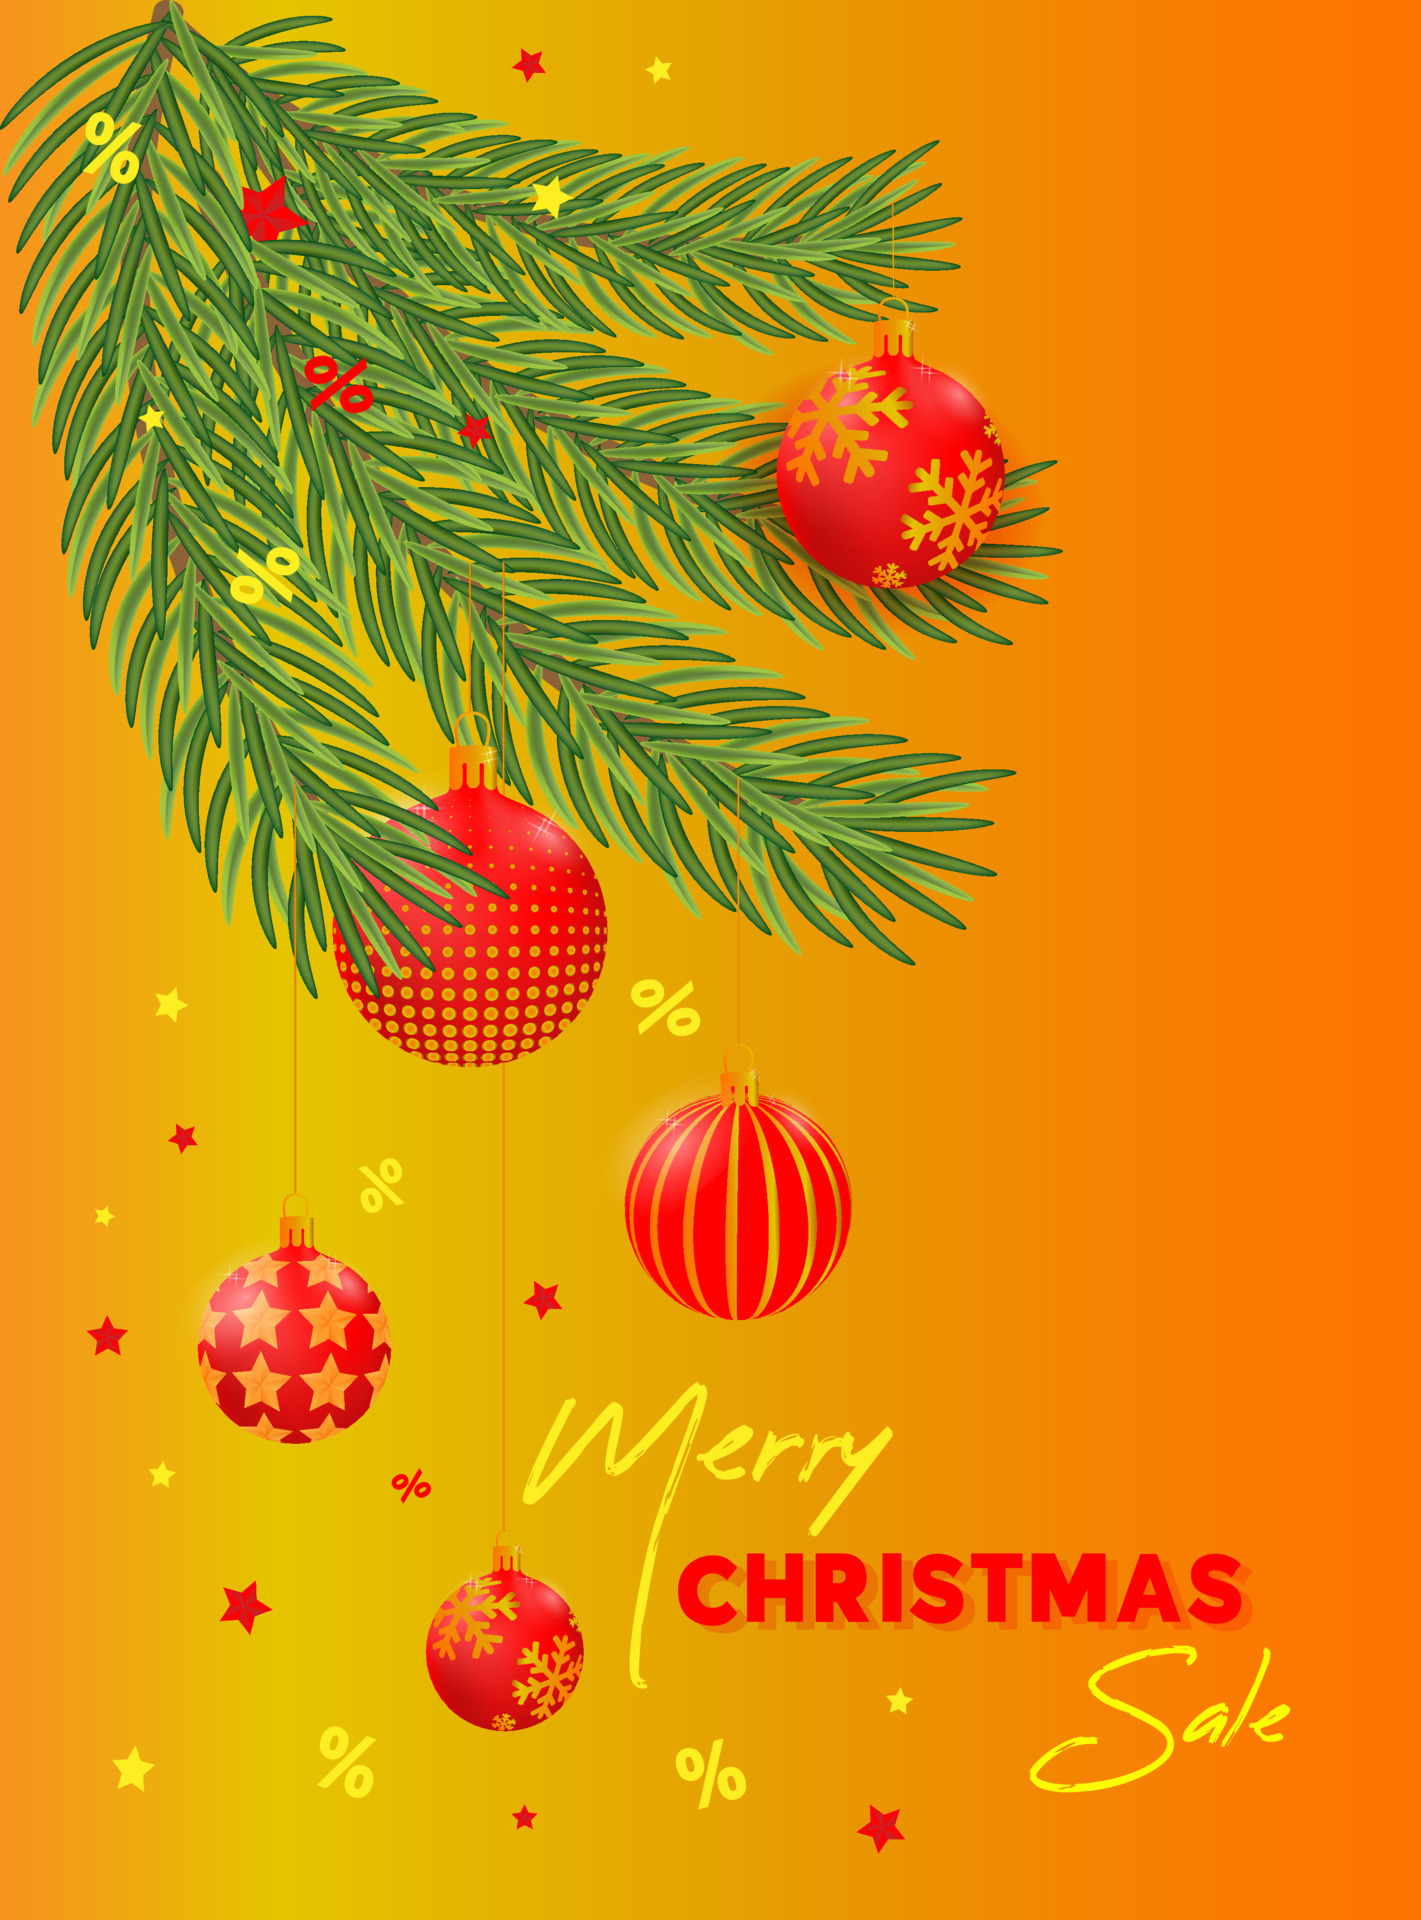 banner de venda com bolas de natal nas cores vermelho e dourado na árvore  de natal. 12978518 Vetor no Vecteezy